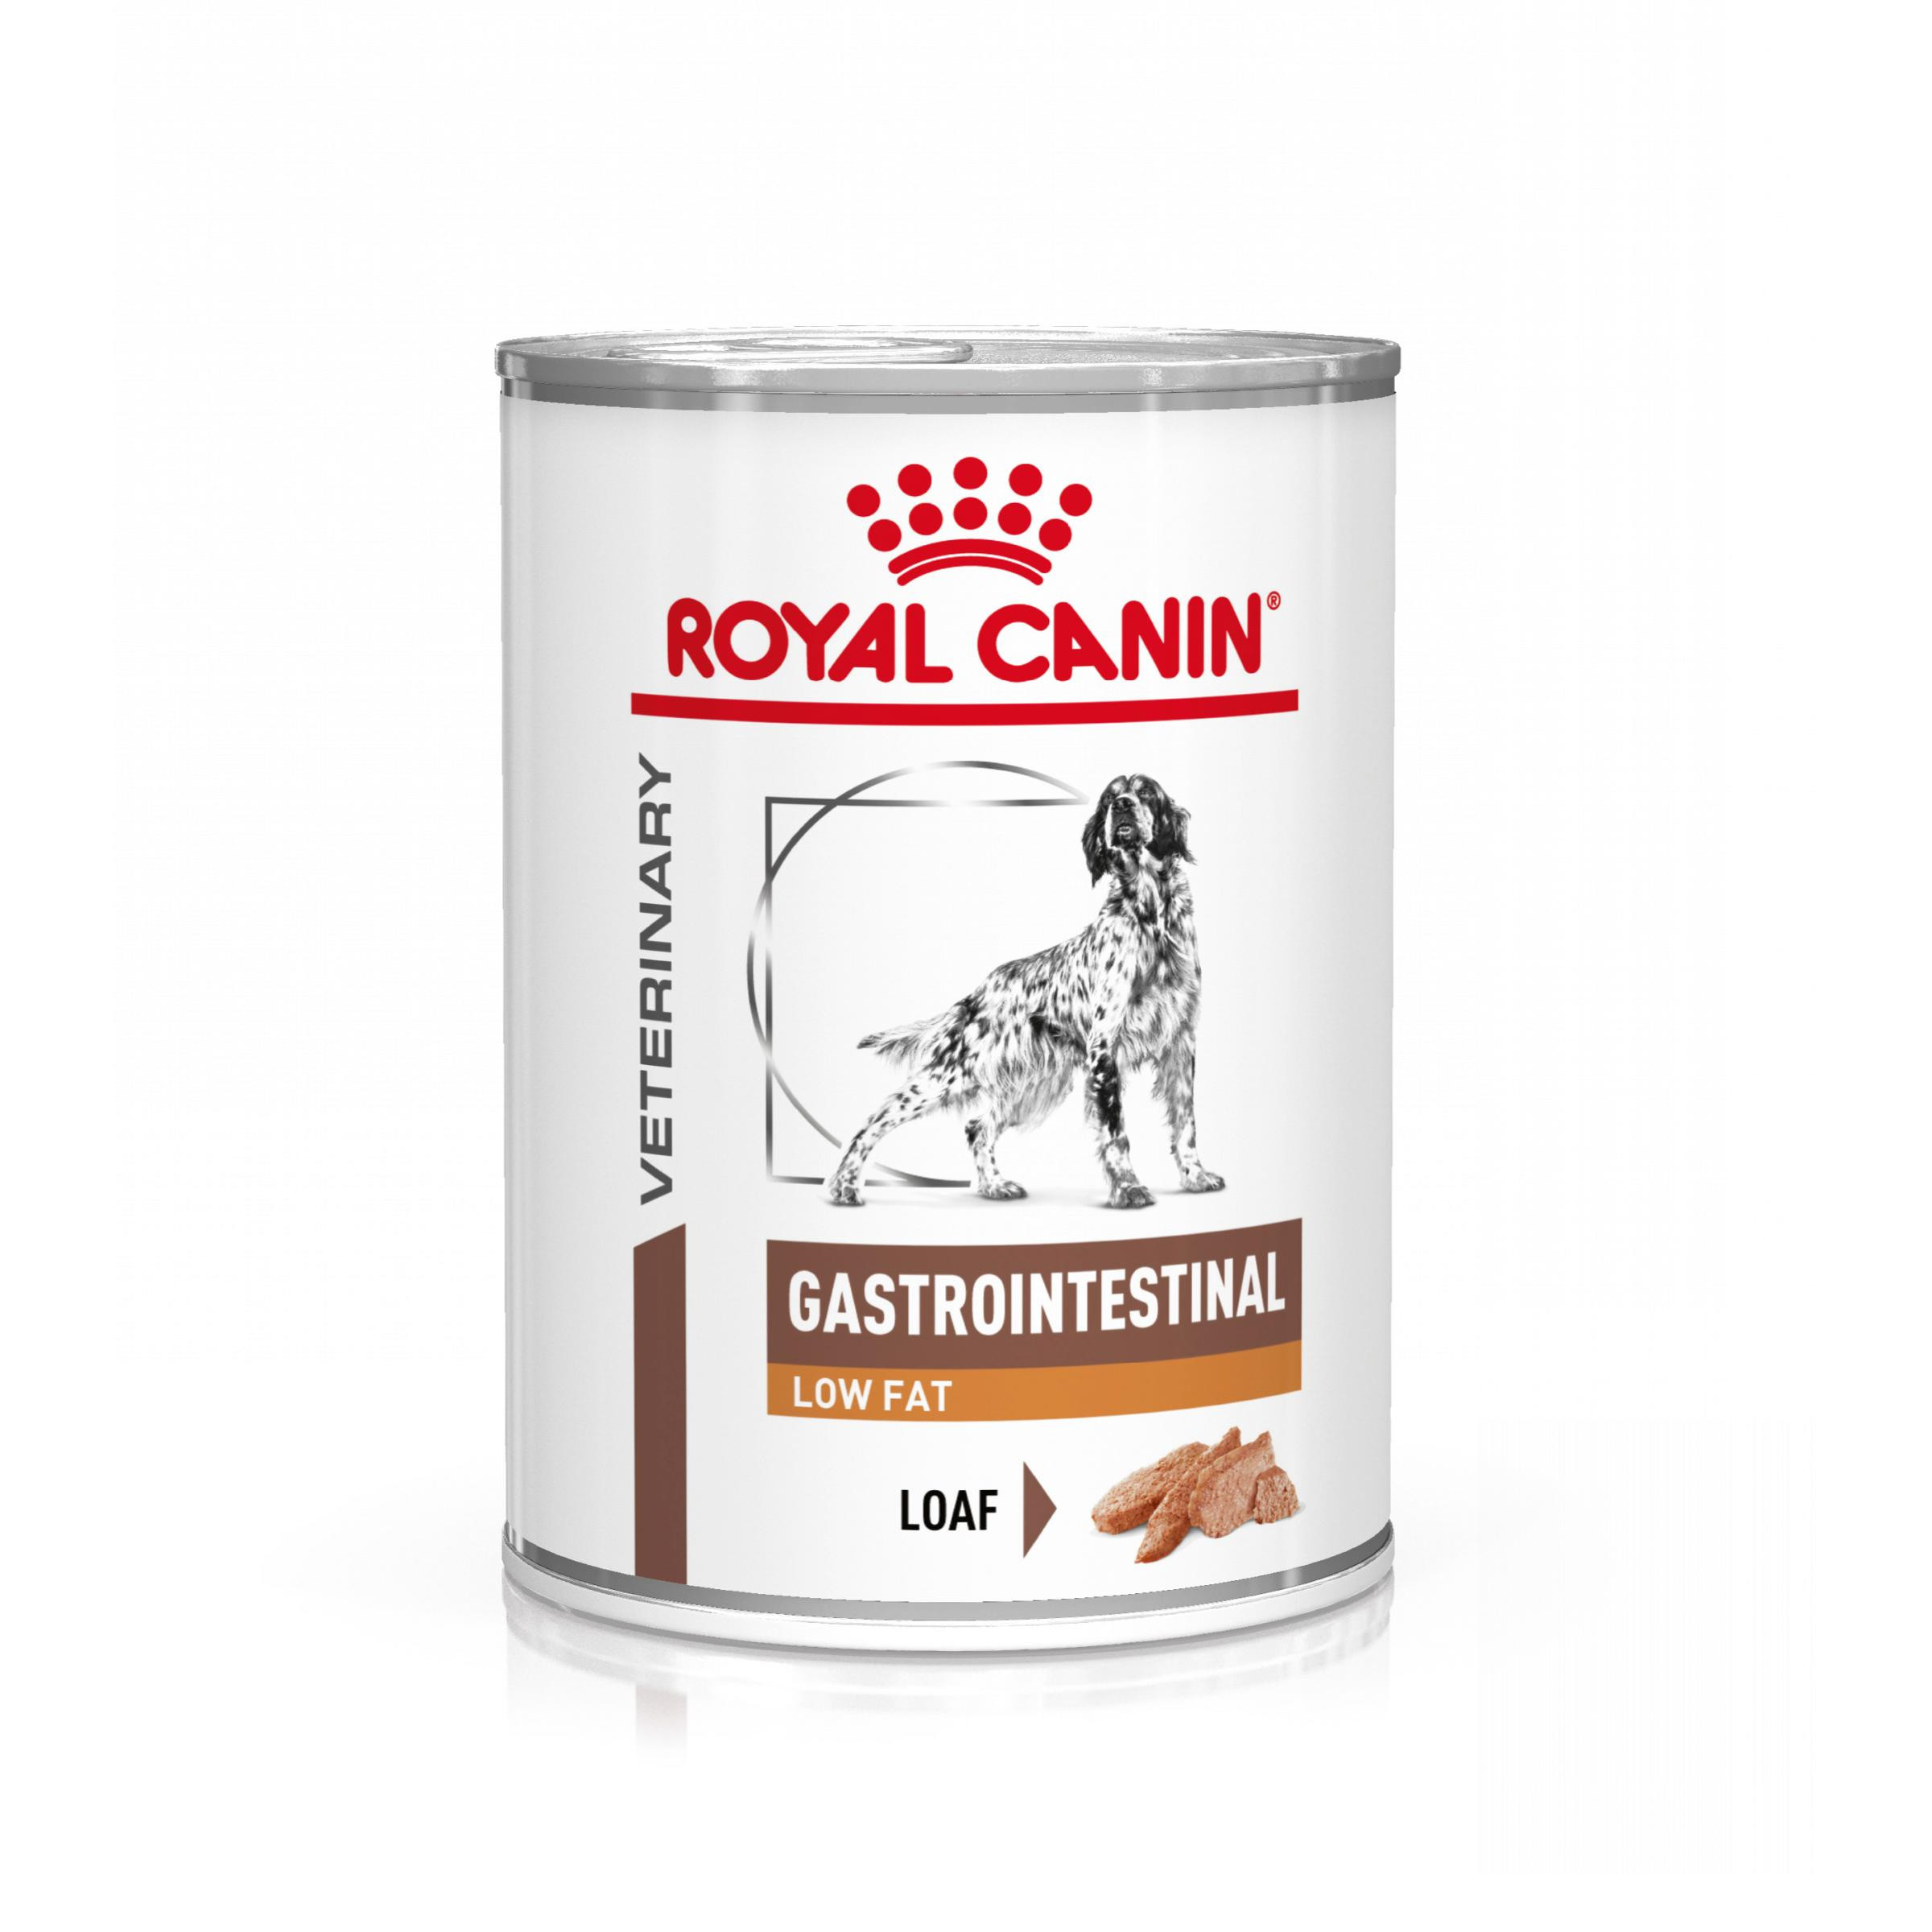 Royal Canin Veterinary Gastrointestinal Low Fat pâtée pour chien